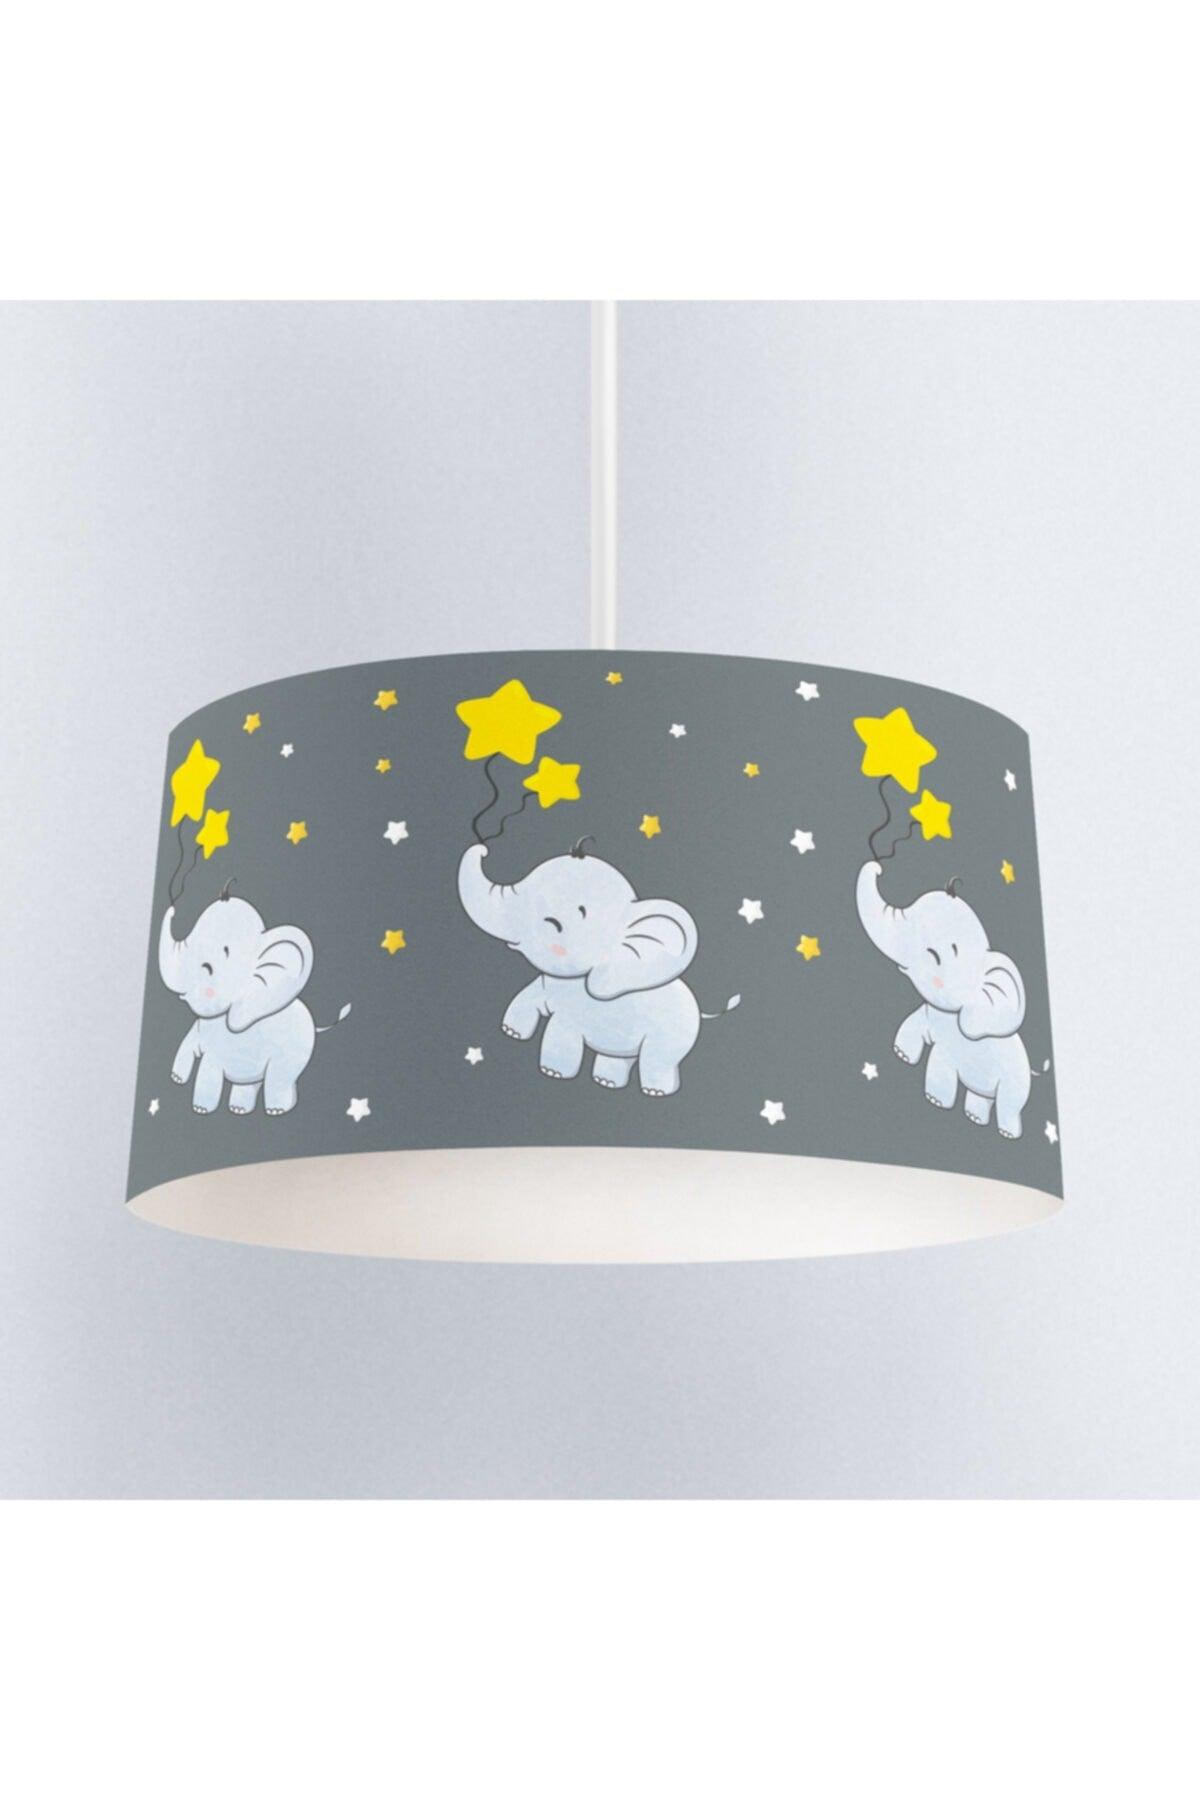 Happy Elephant Kids Room Pendant Lamp Chandelier - Swordslife